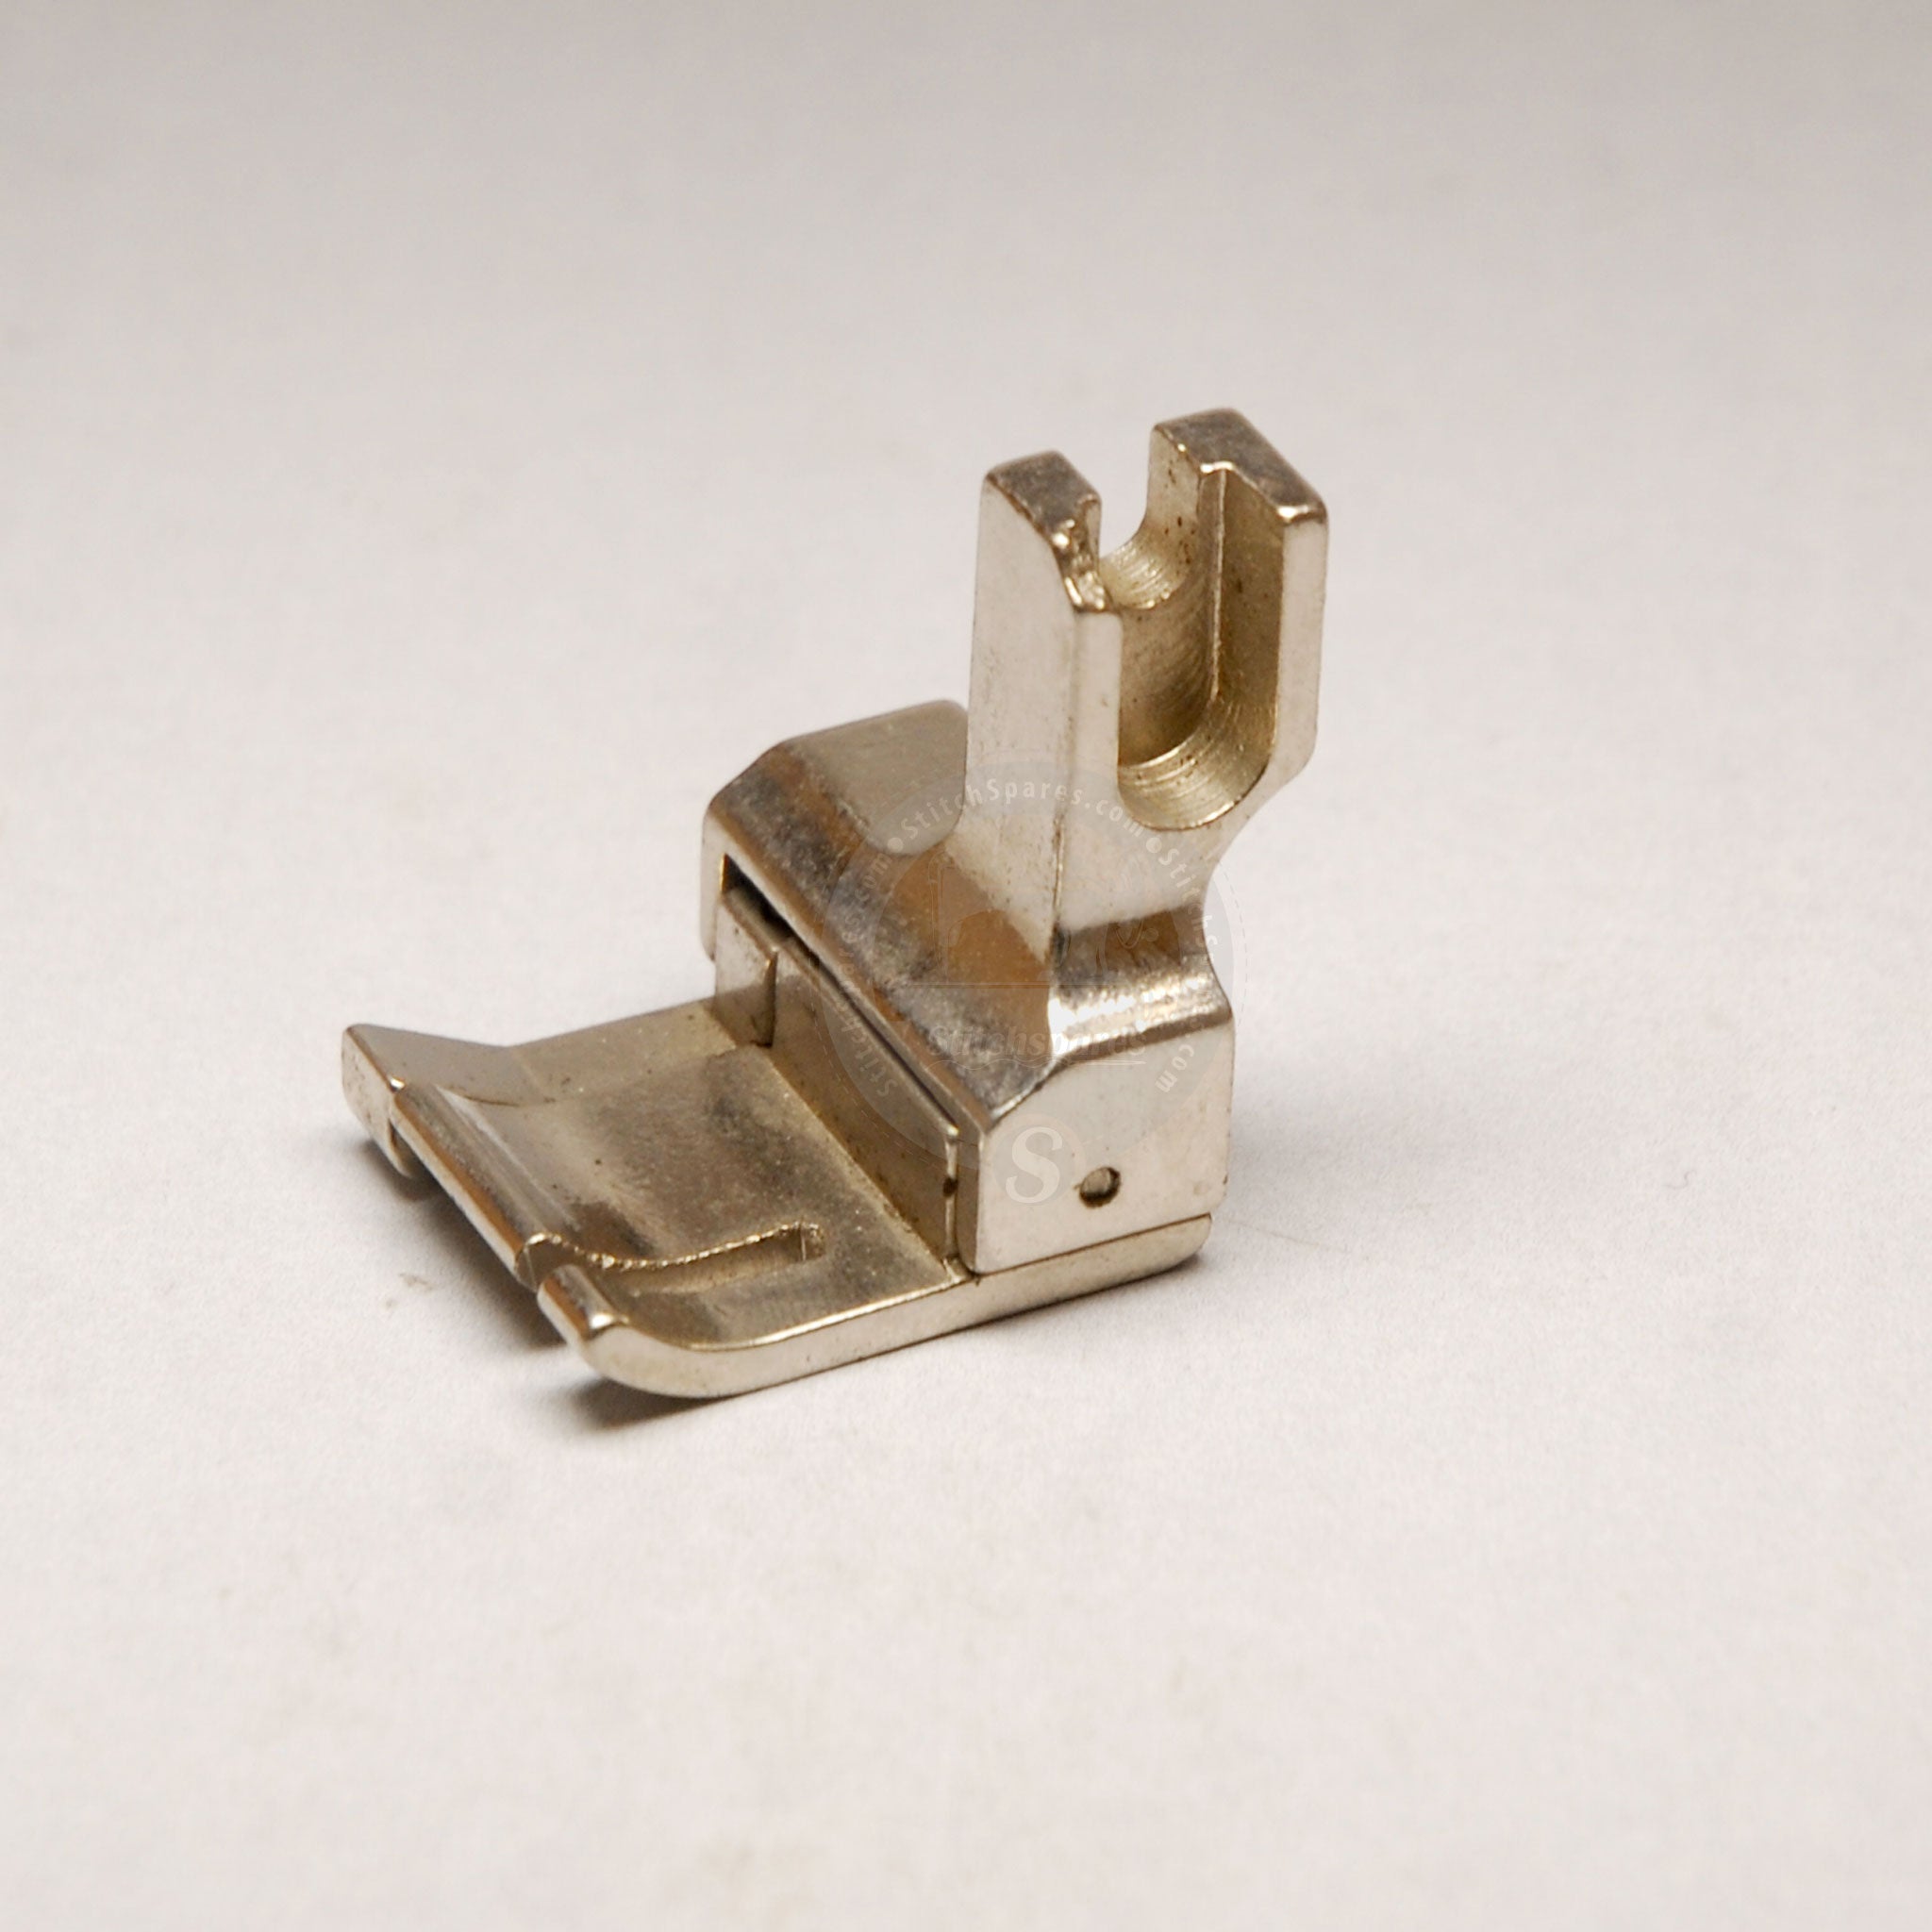 औद्योगिक सिलाई मशीन स्पेयर पार्ट के लिए सीएल 1/2 लेफ्ट साइड क्षतिपूर्ति प्रेसर फुट: